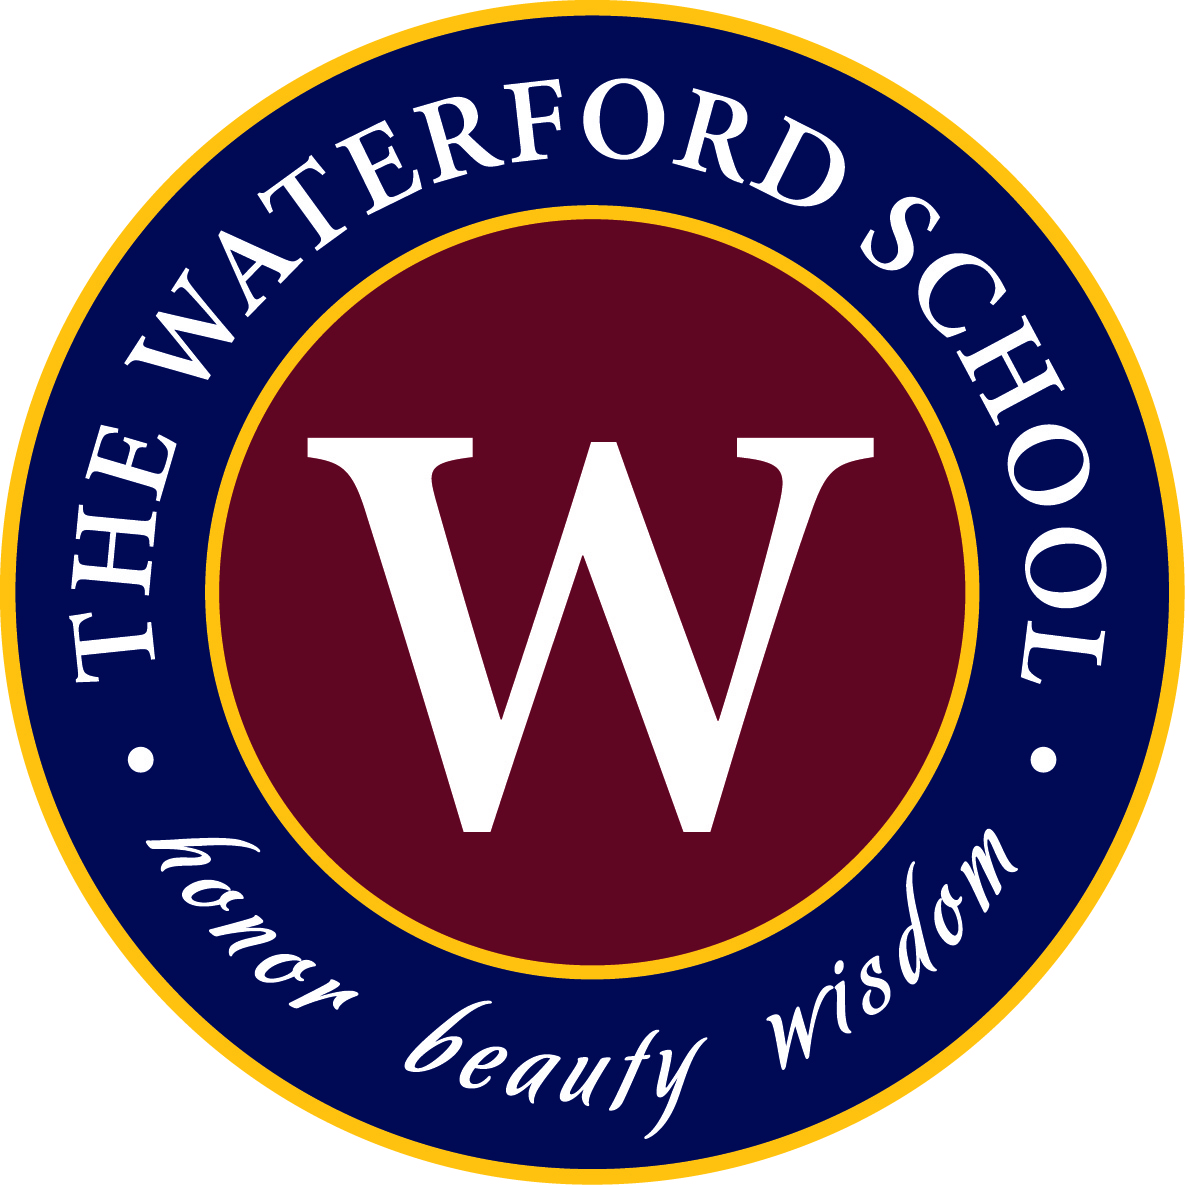 The Waterford School is Utah's premier private, college preparatory school